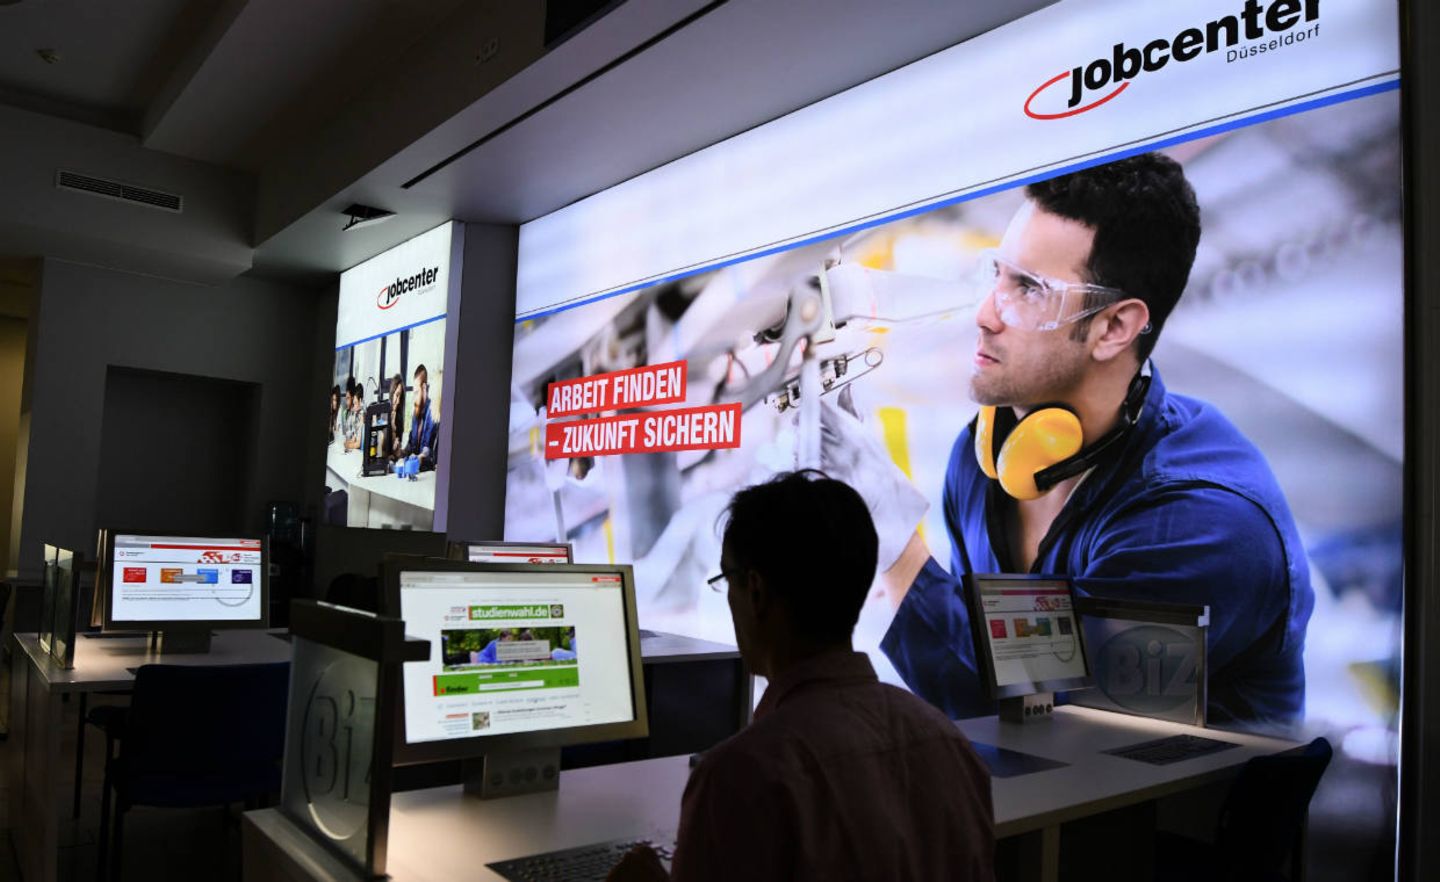 Jobcenter Düsseldorf: Die Digitalisierung verändert die Arbeitswelt